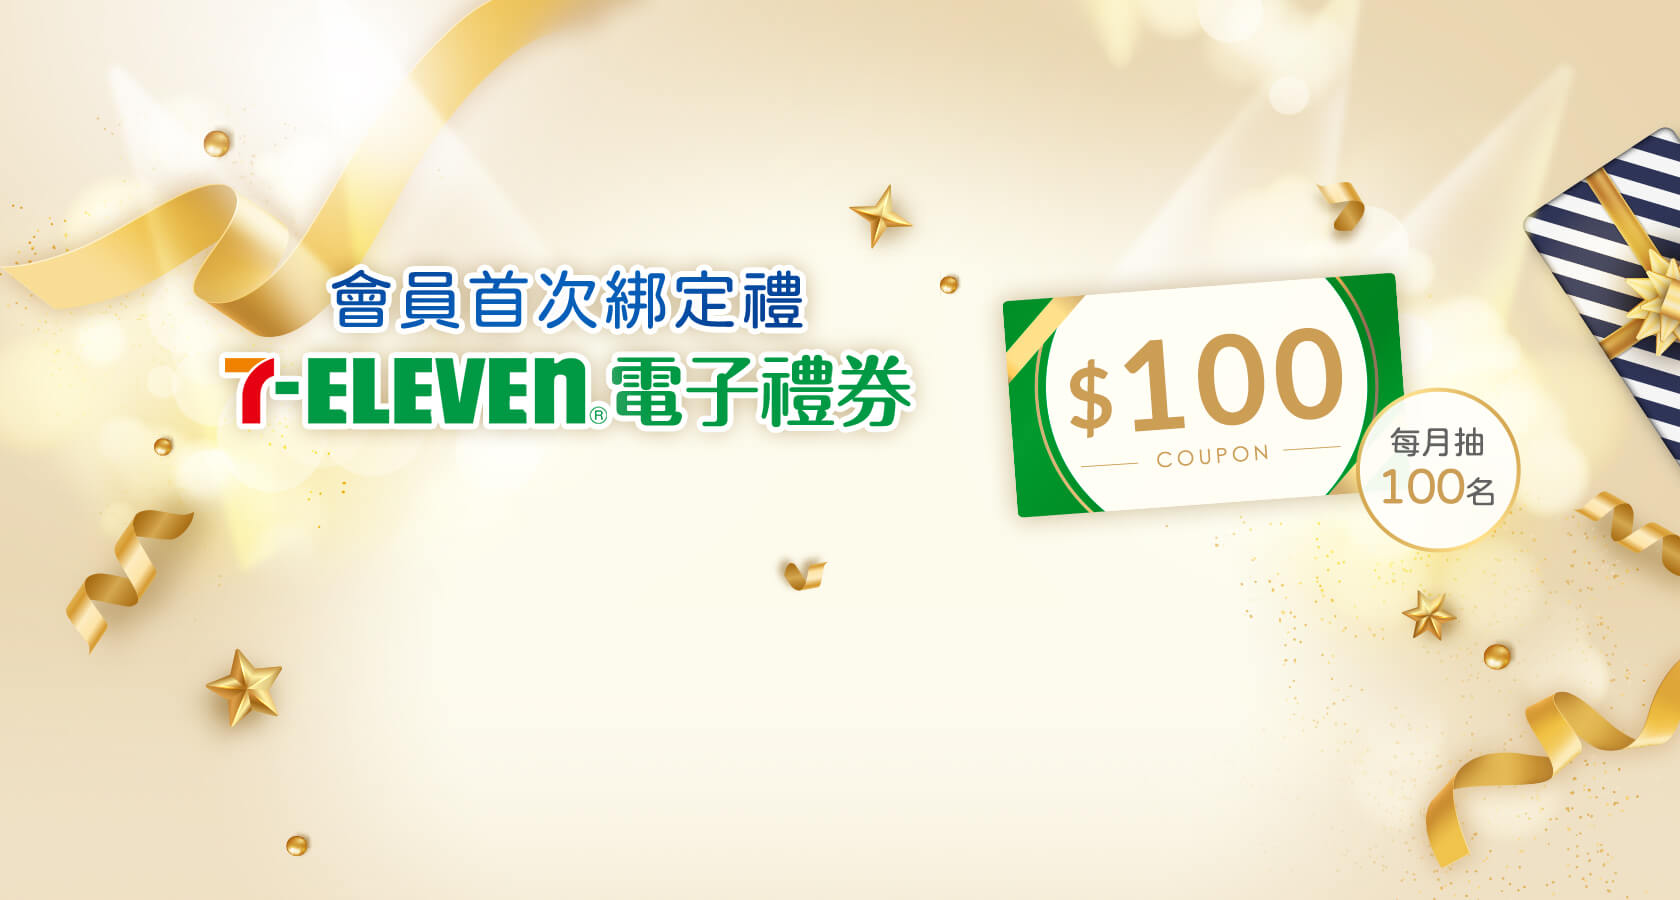 會員首次綁定禮 7-Eleven電子禮券$100 每月抽100名